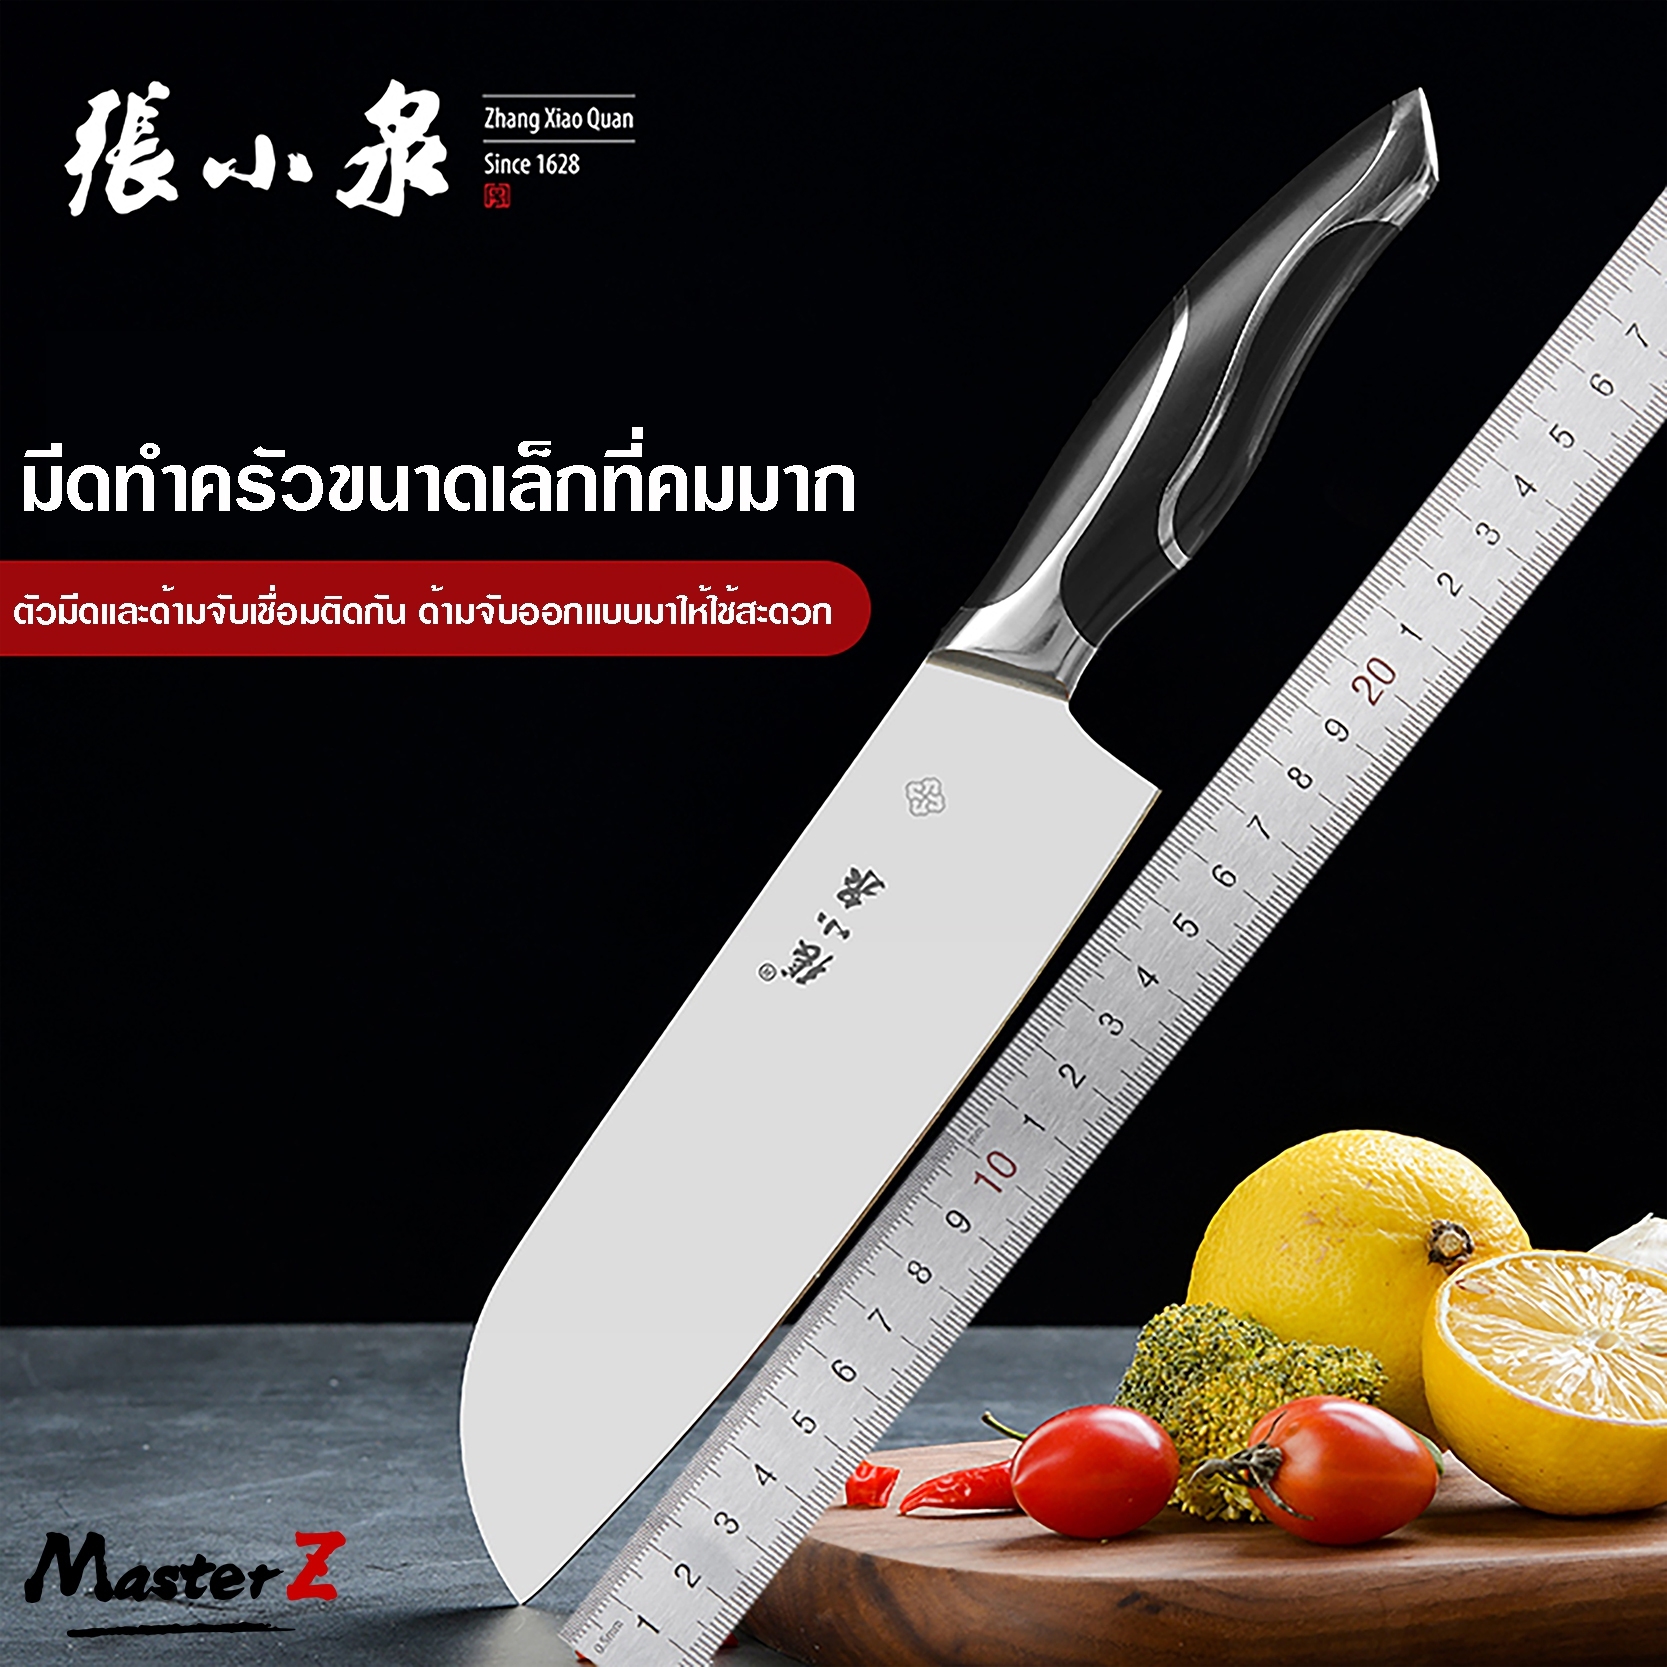 มีดครัว ZhangXiaoQuan มีด มีดเชฟ มีดทำครัว มีดแล่เนื้อ มีดแล่ปลา มีดเชฟ การันตีความคม ผลิตจากสแตนเลสคุณภาพ DC0163S / MasterZ